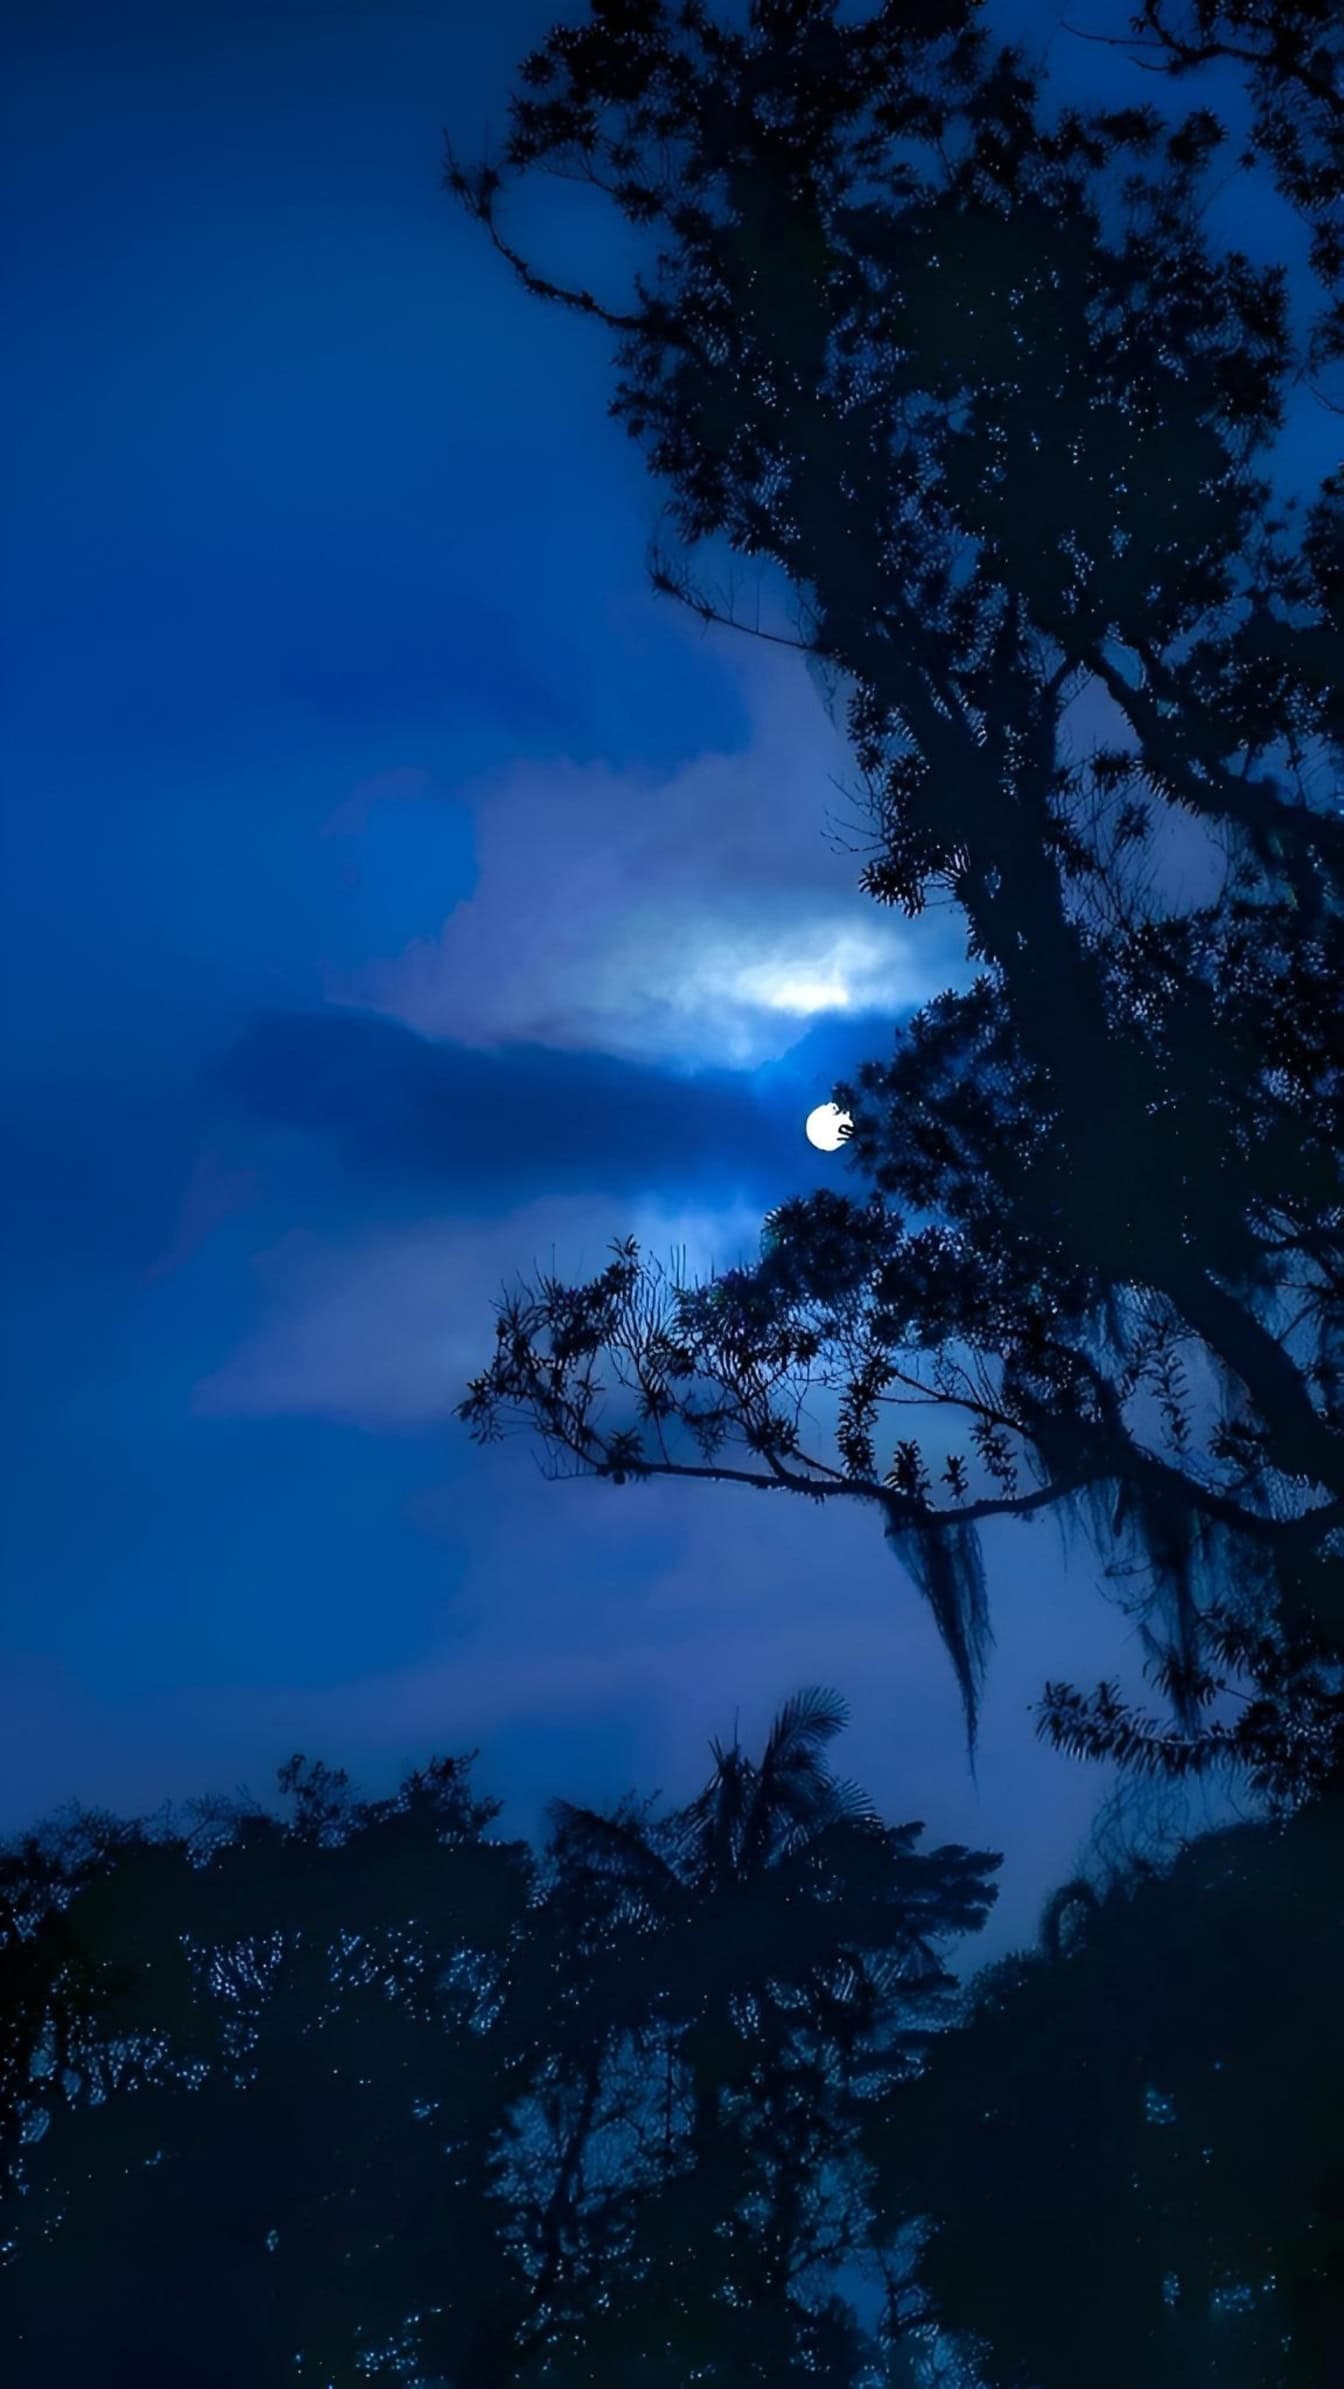 Une silhouette d’arbres au clair de lune, un paysage lunaire avec une Lune au ciel nocturne bleu